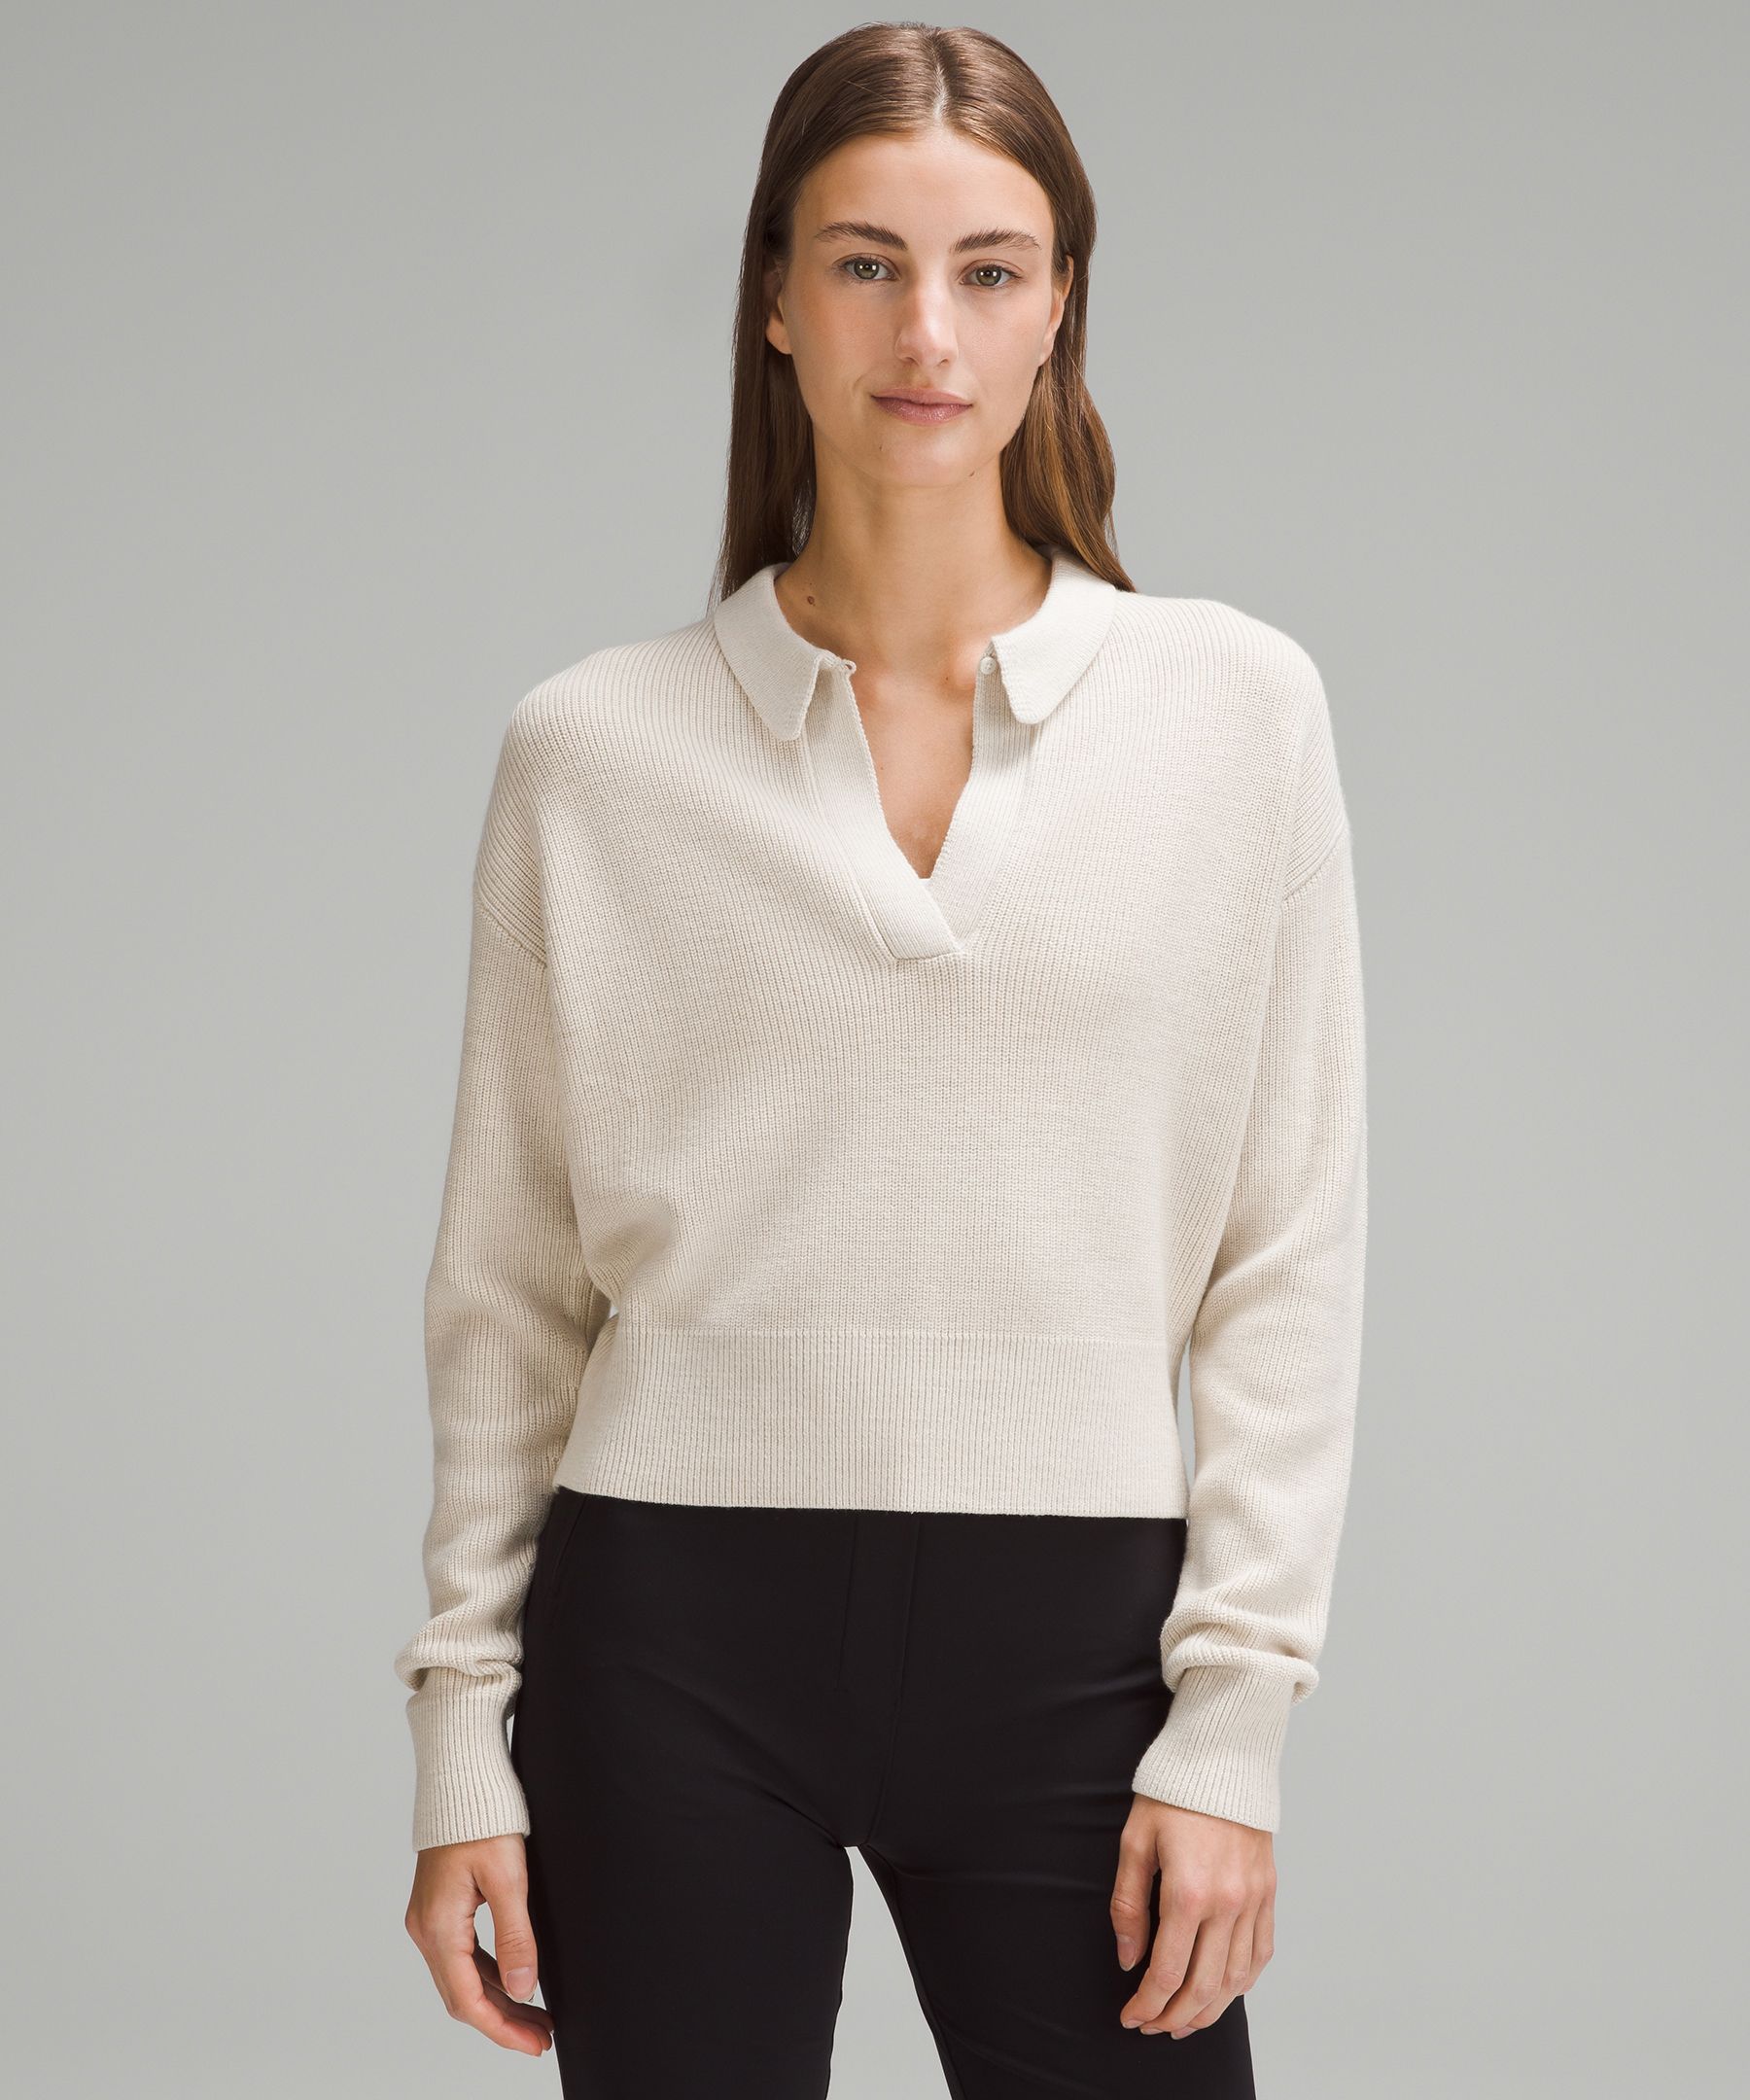 Sweaters for Women  Knit Sweaters, Cardigans, Turtlenecks - Lulus